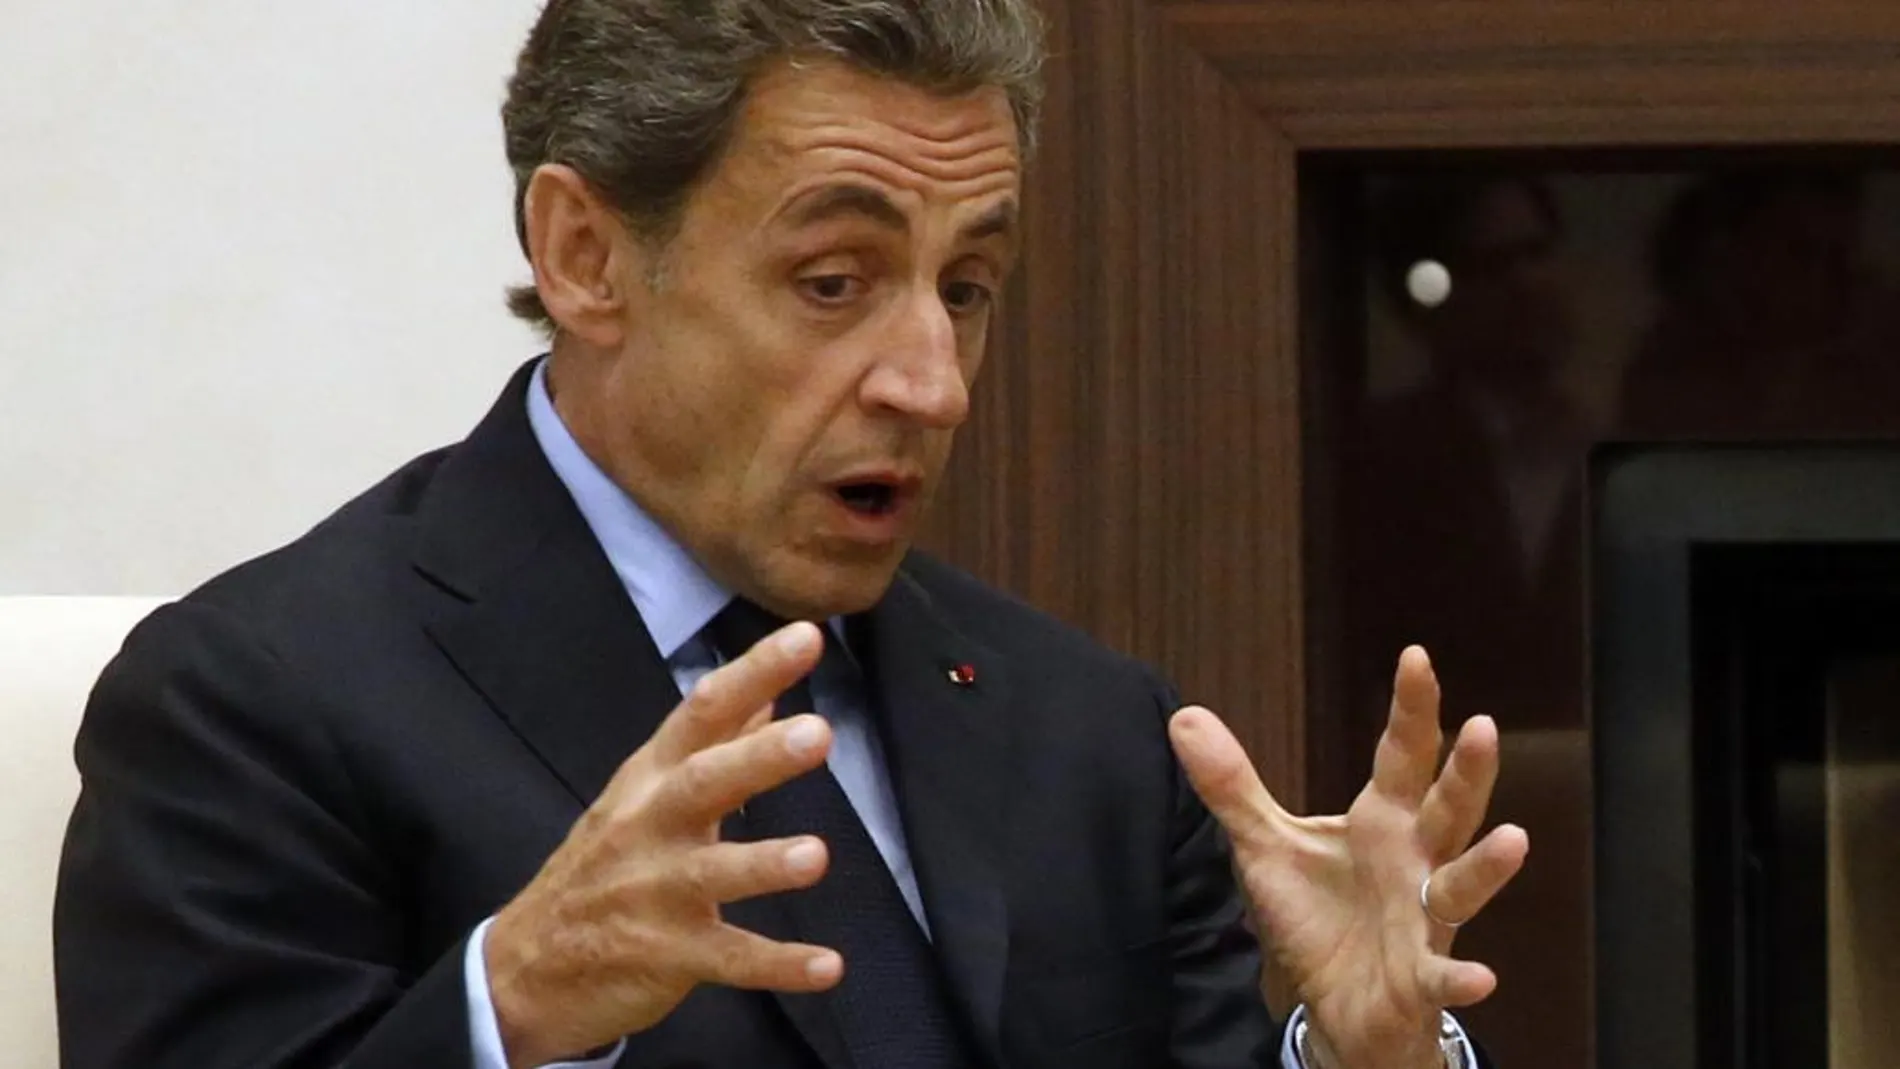 El ex presidente francés, Nicolas Sarkozy